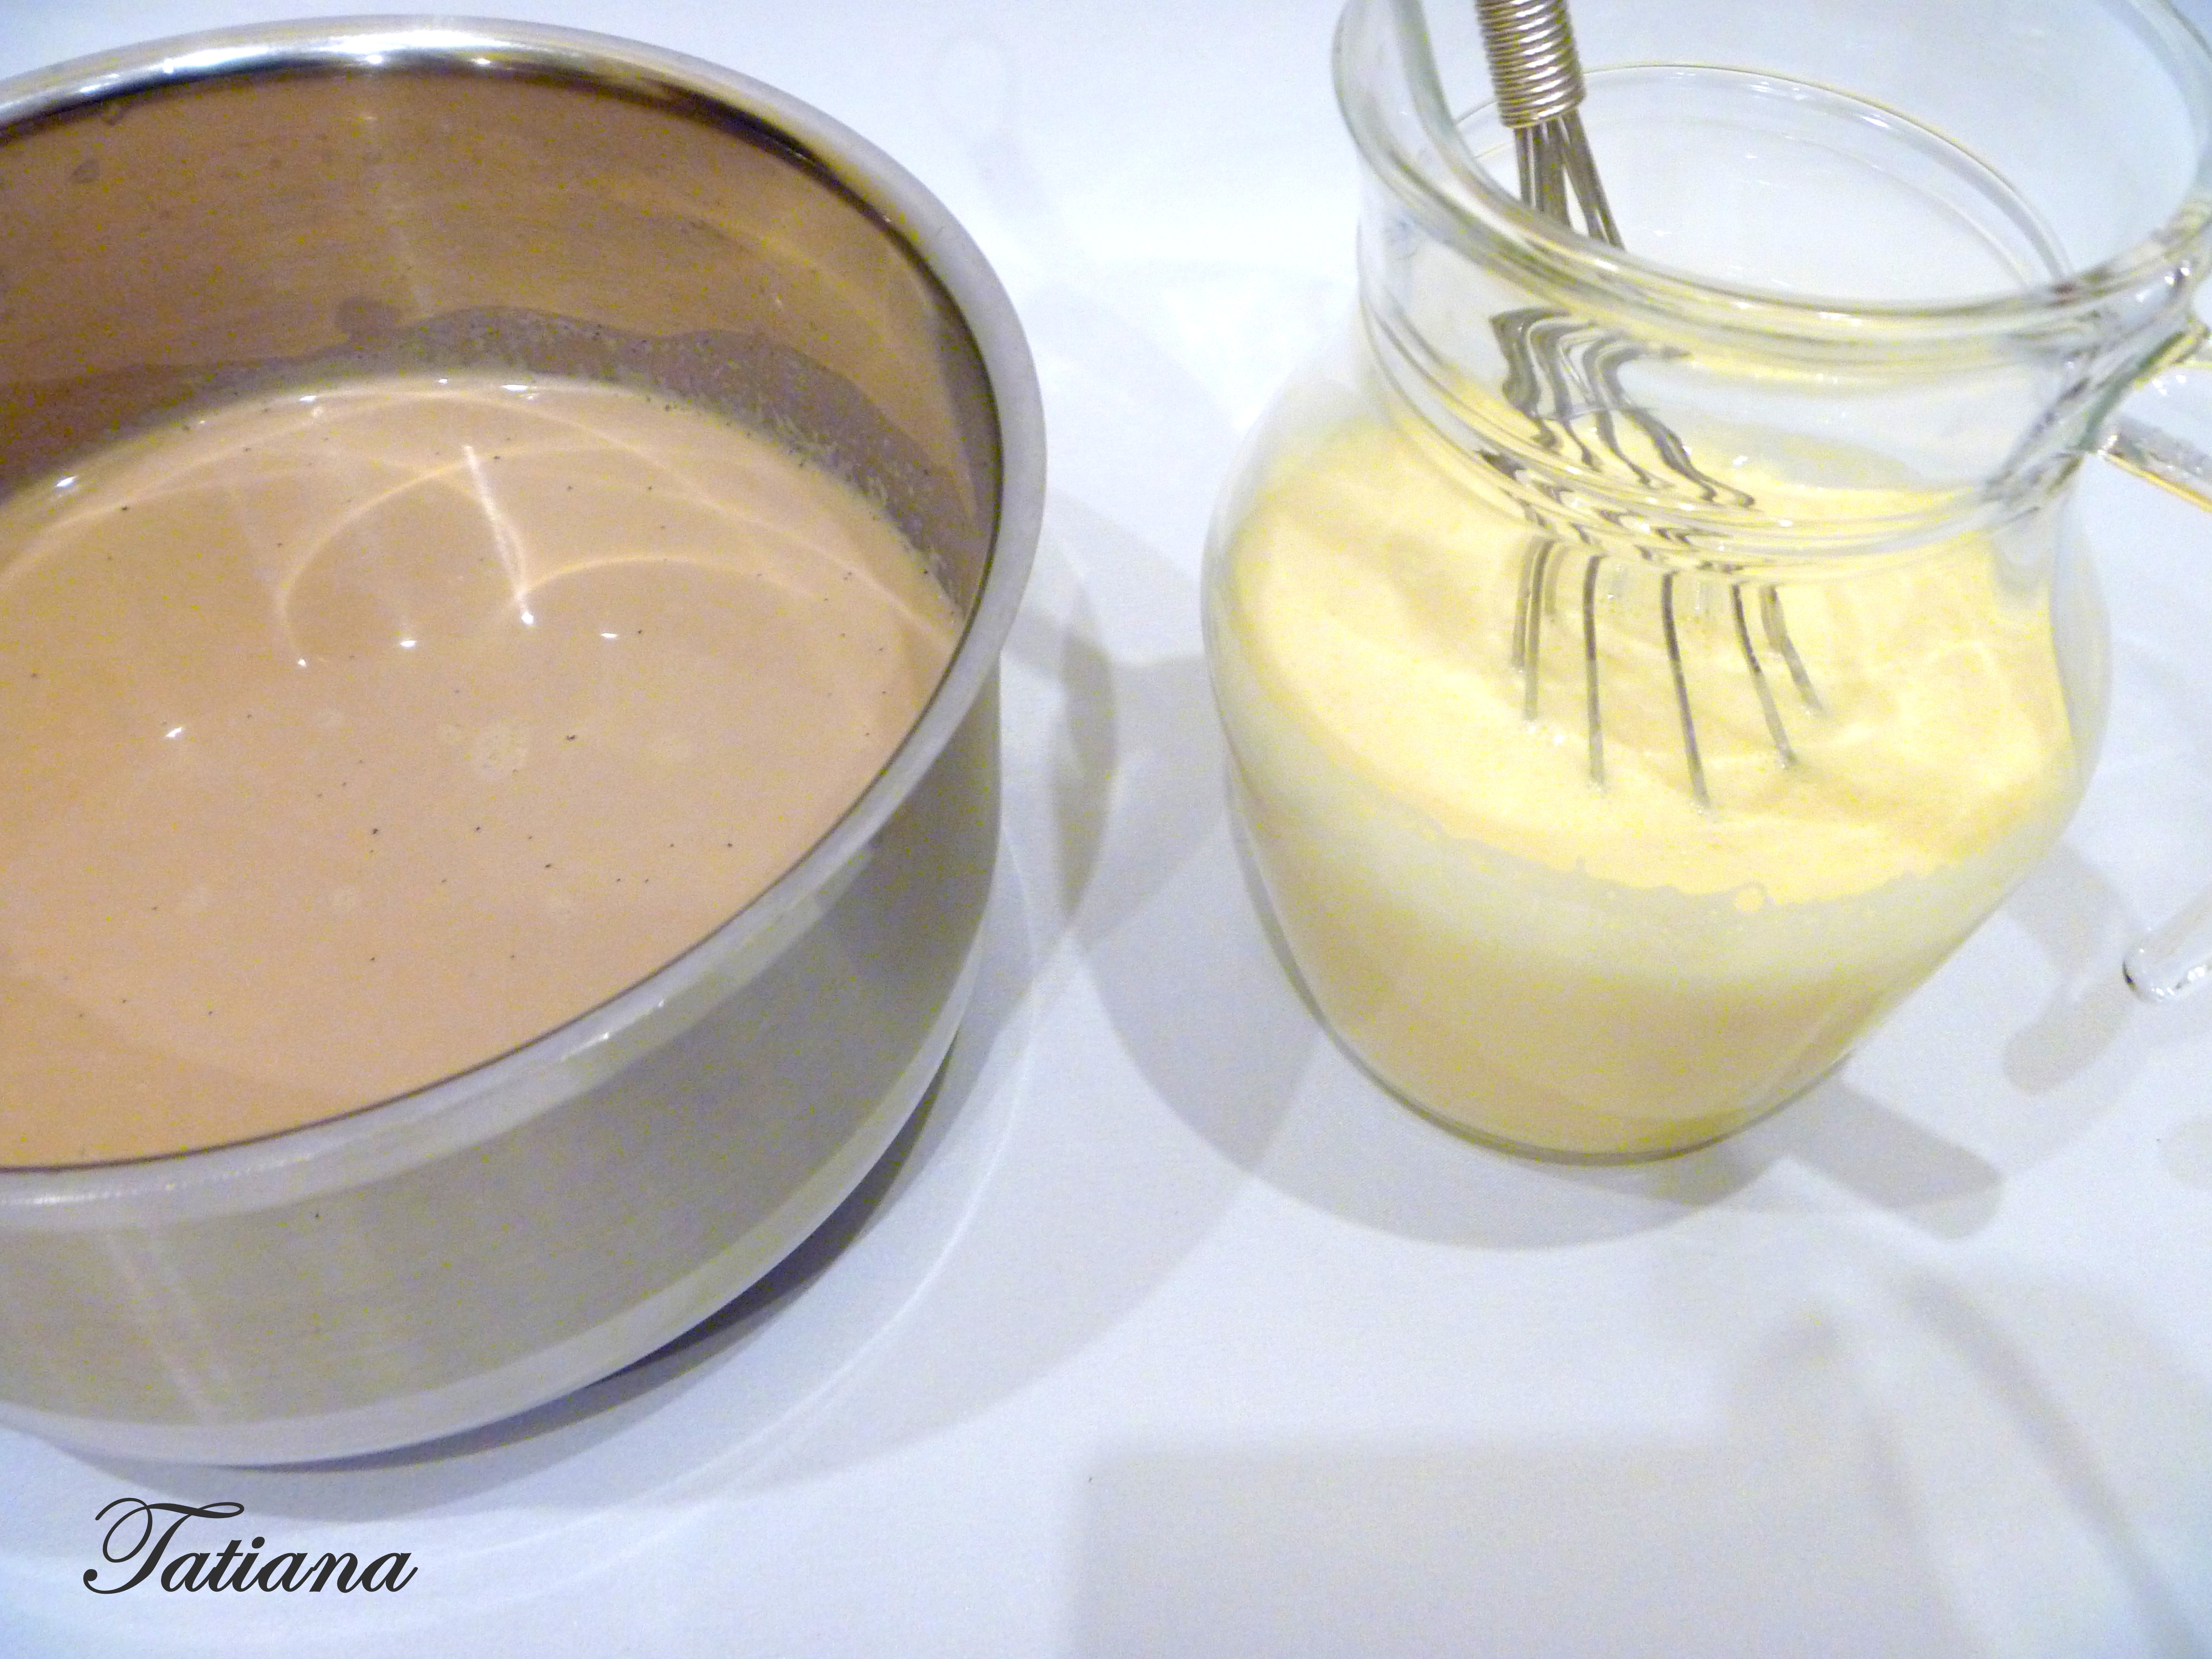 Кофейно-ванильный пудинг с кофейно-ромовым соусом: шаг 3